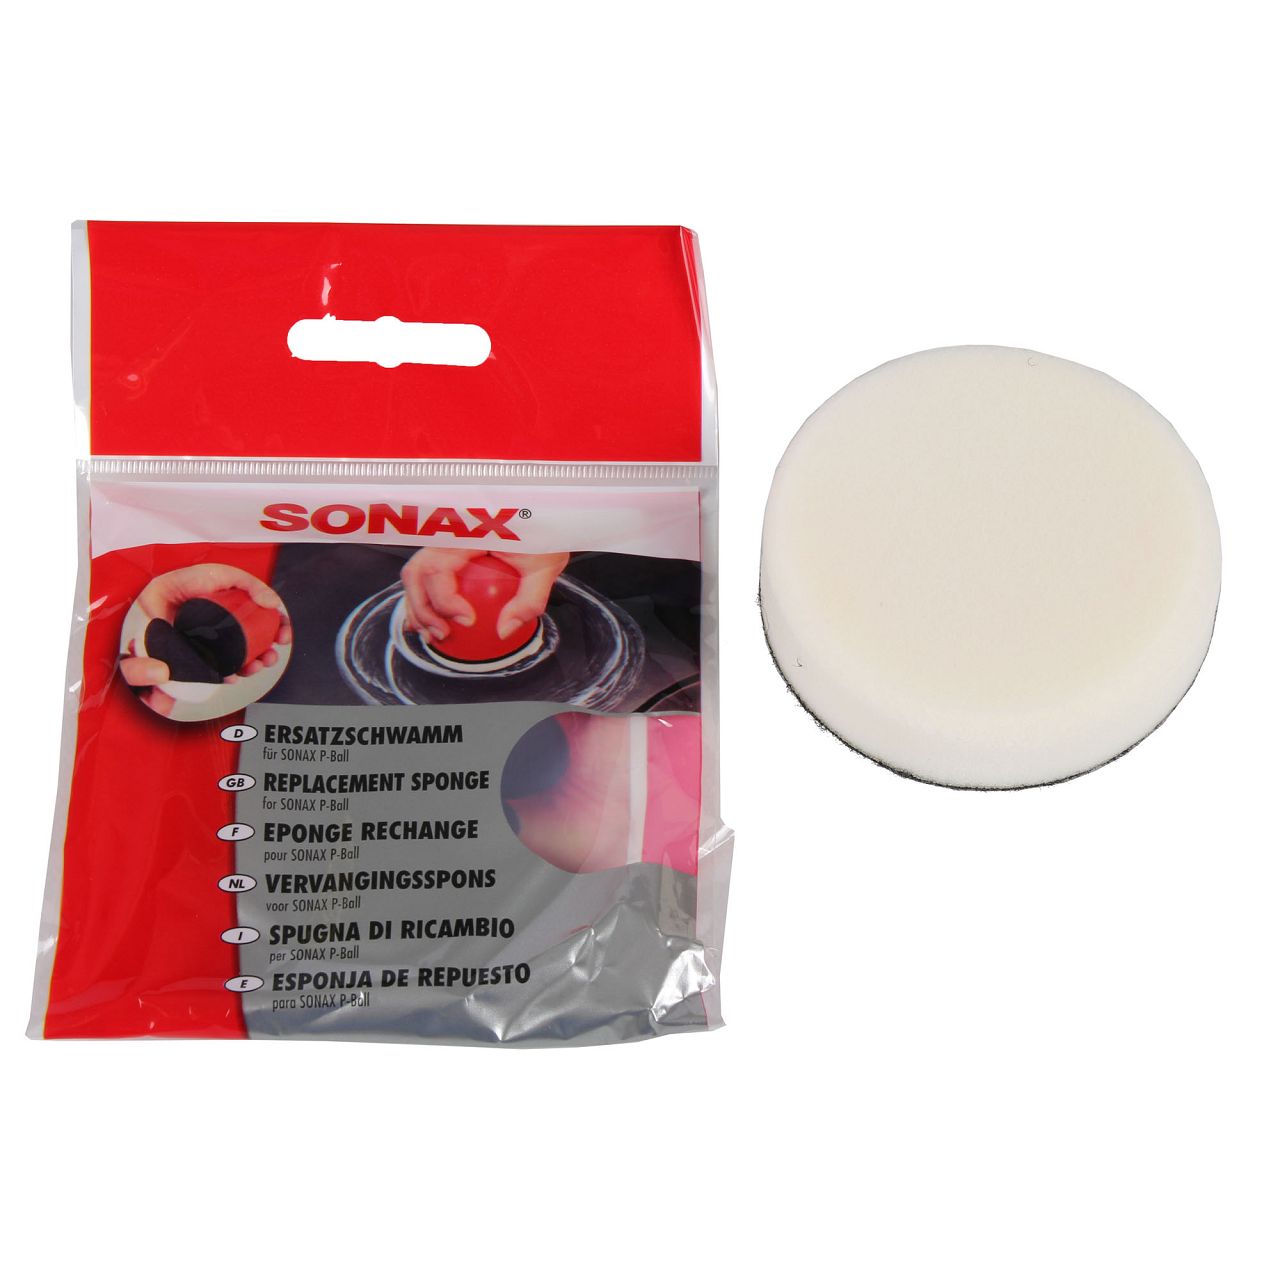 SONAX 417241 Ersatzschwamm für P-BALL Polierball Polierschwamm Polier Ball